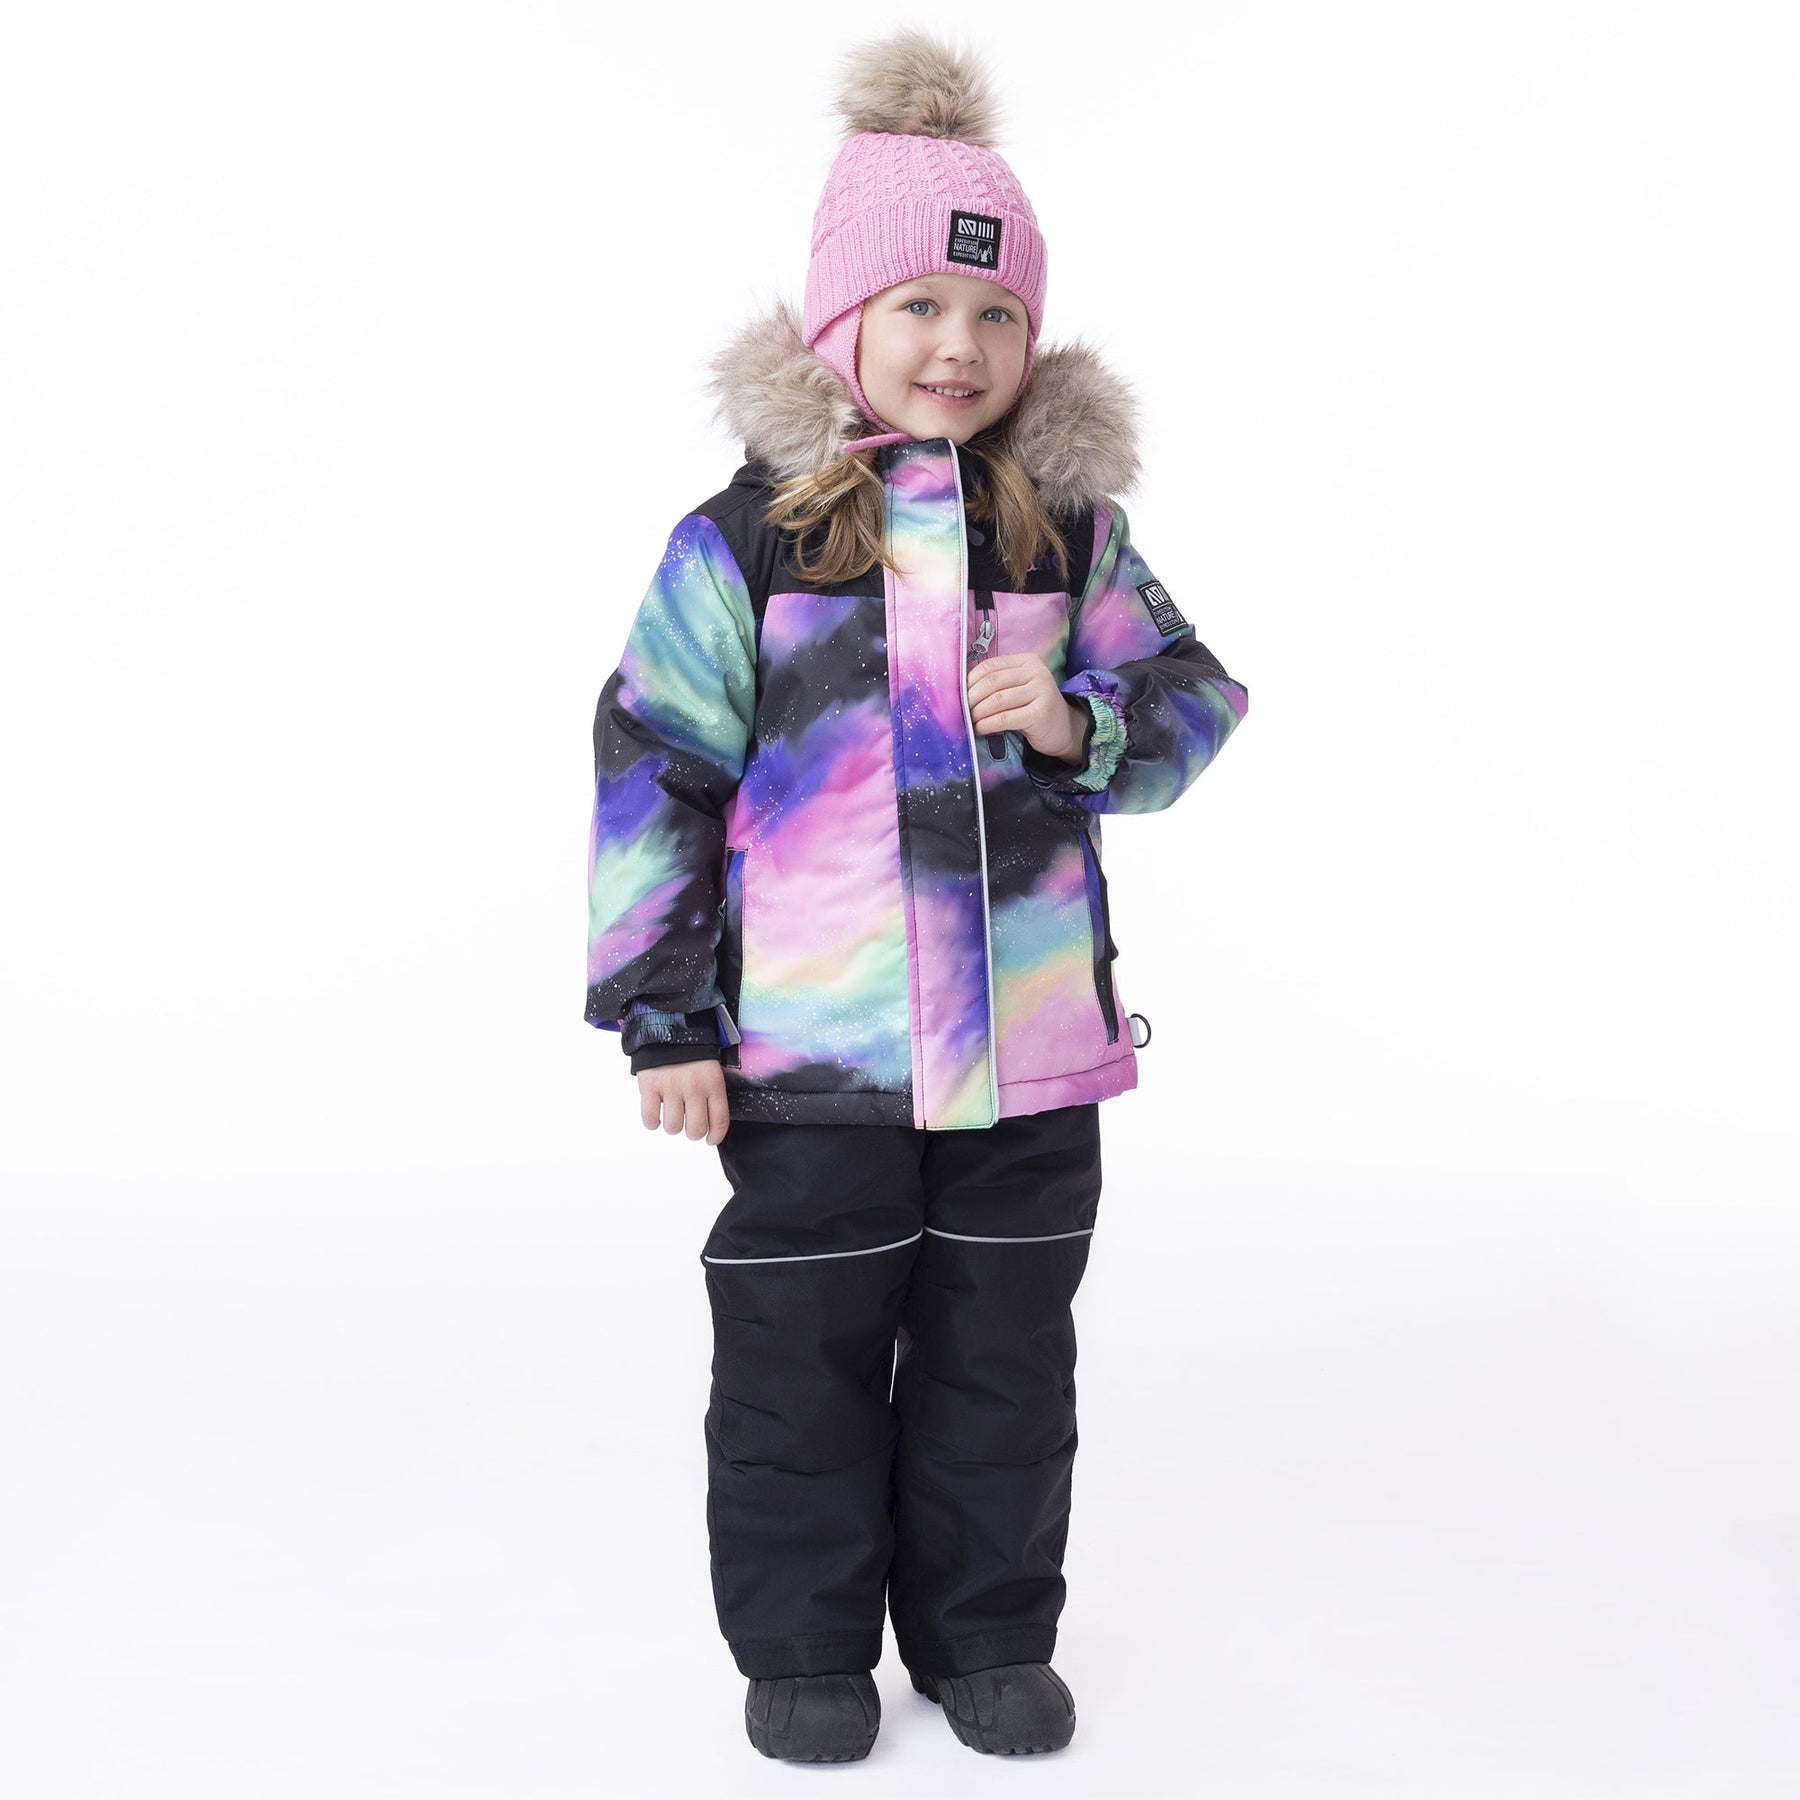 Tuque en tricot pour enfant fille par Nanö | Alexanne/F23TU270 Rose | Boutique Flos, vêtements mode pour bébés et enfants